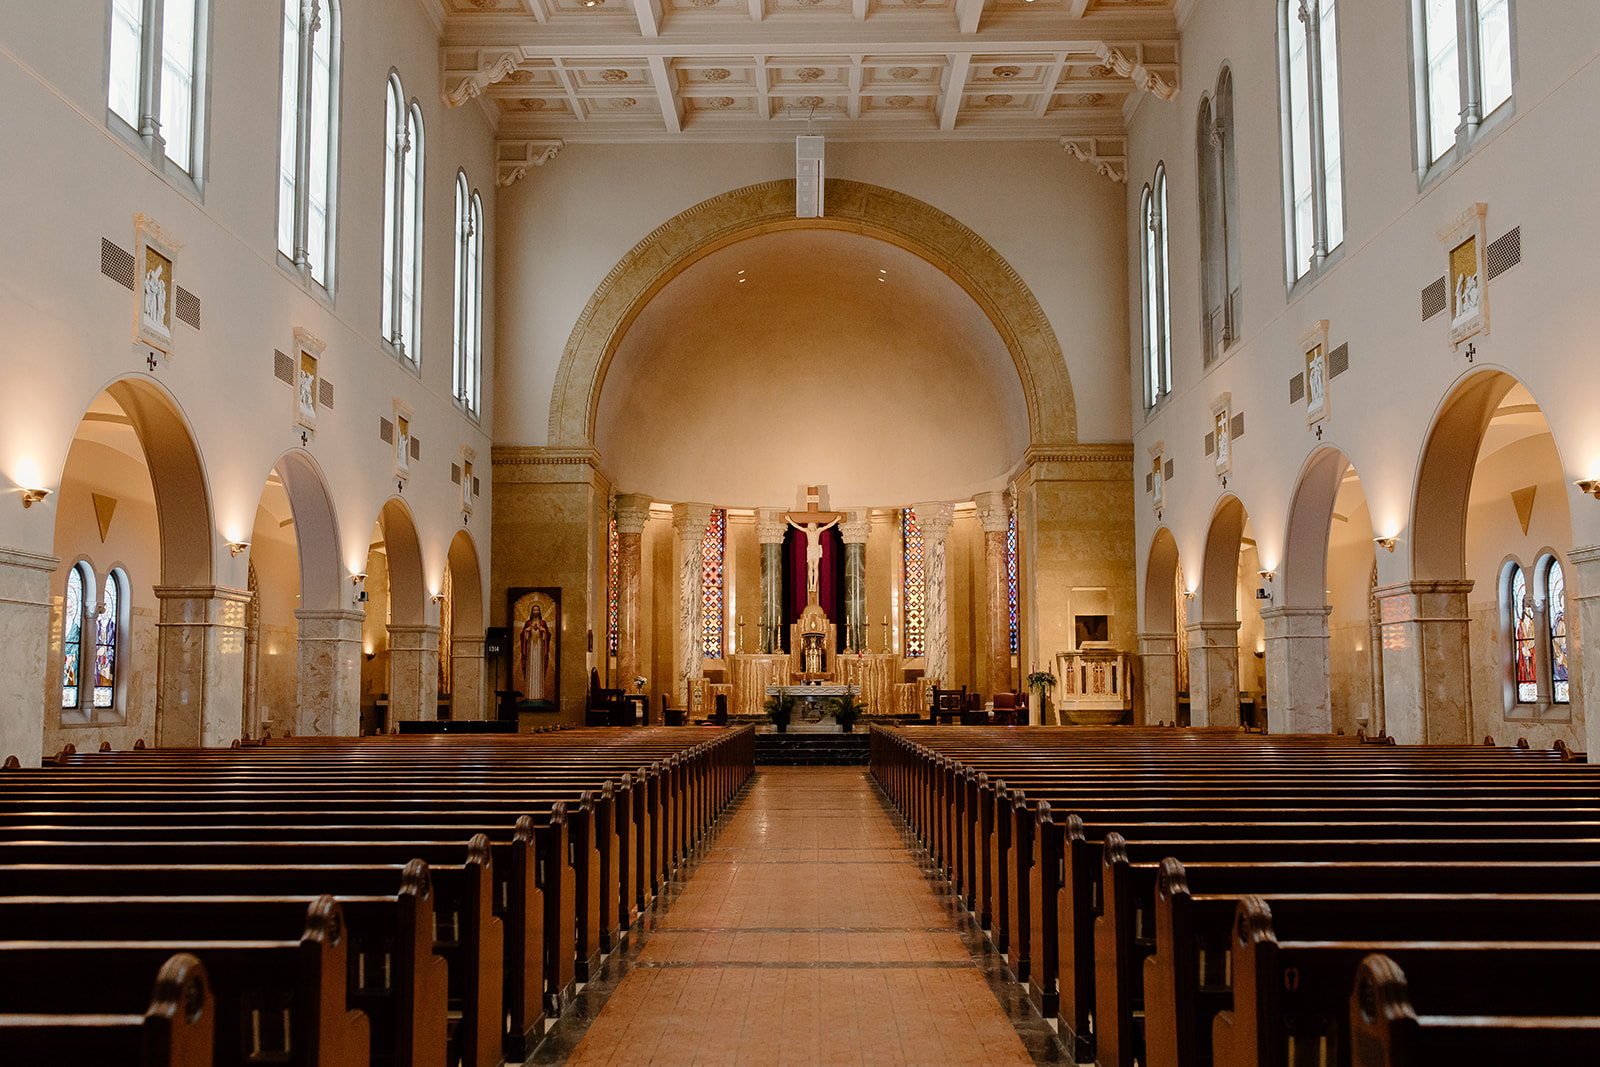 Inside of a large Catholic Church